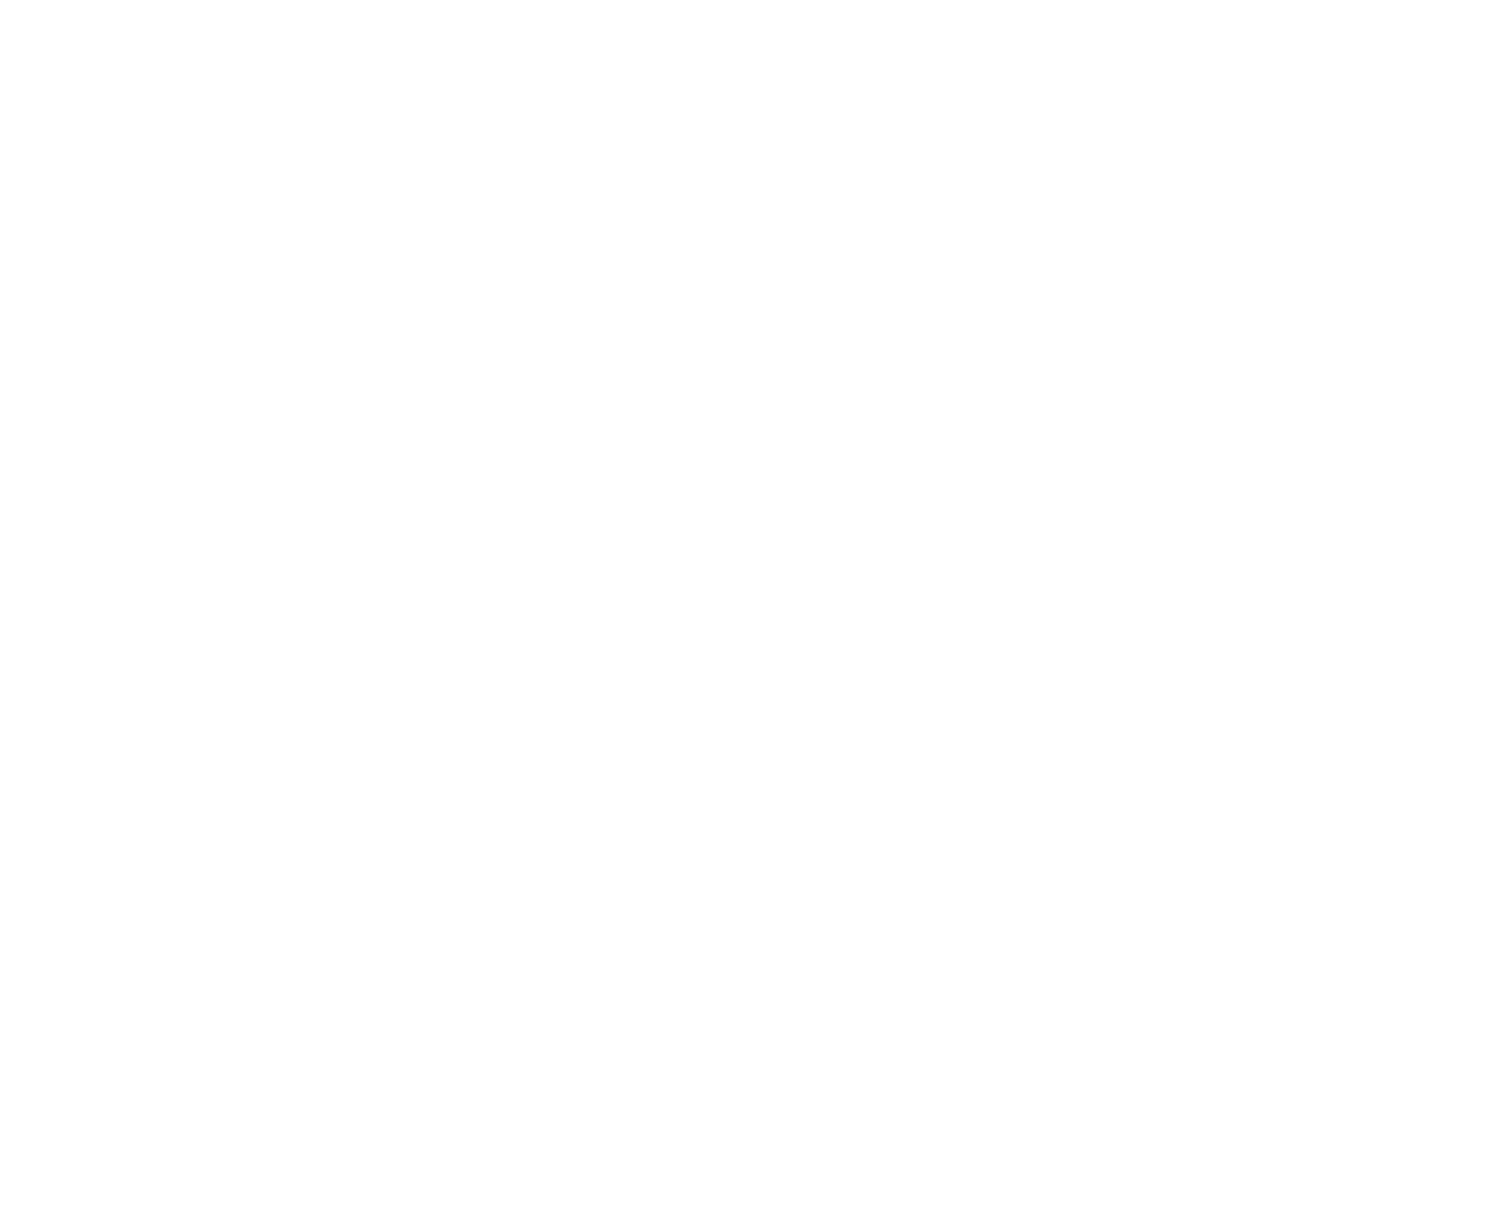  E ta un honor pa por a crea un plataforma dinamico na e siguiente generacion di Aruba su turismo , ta bisa Kim Geurt   